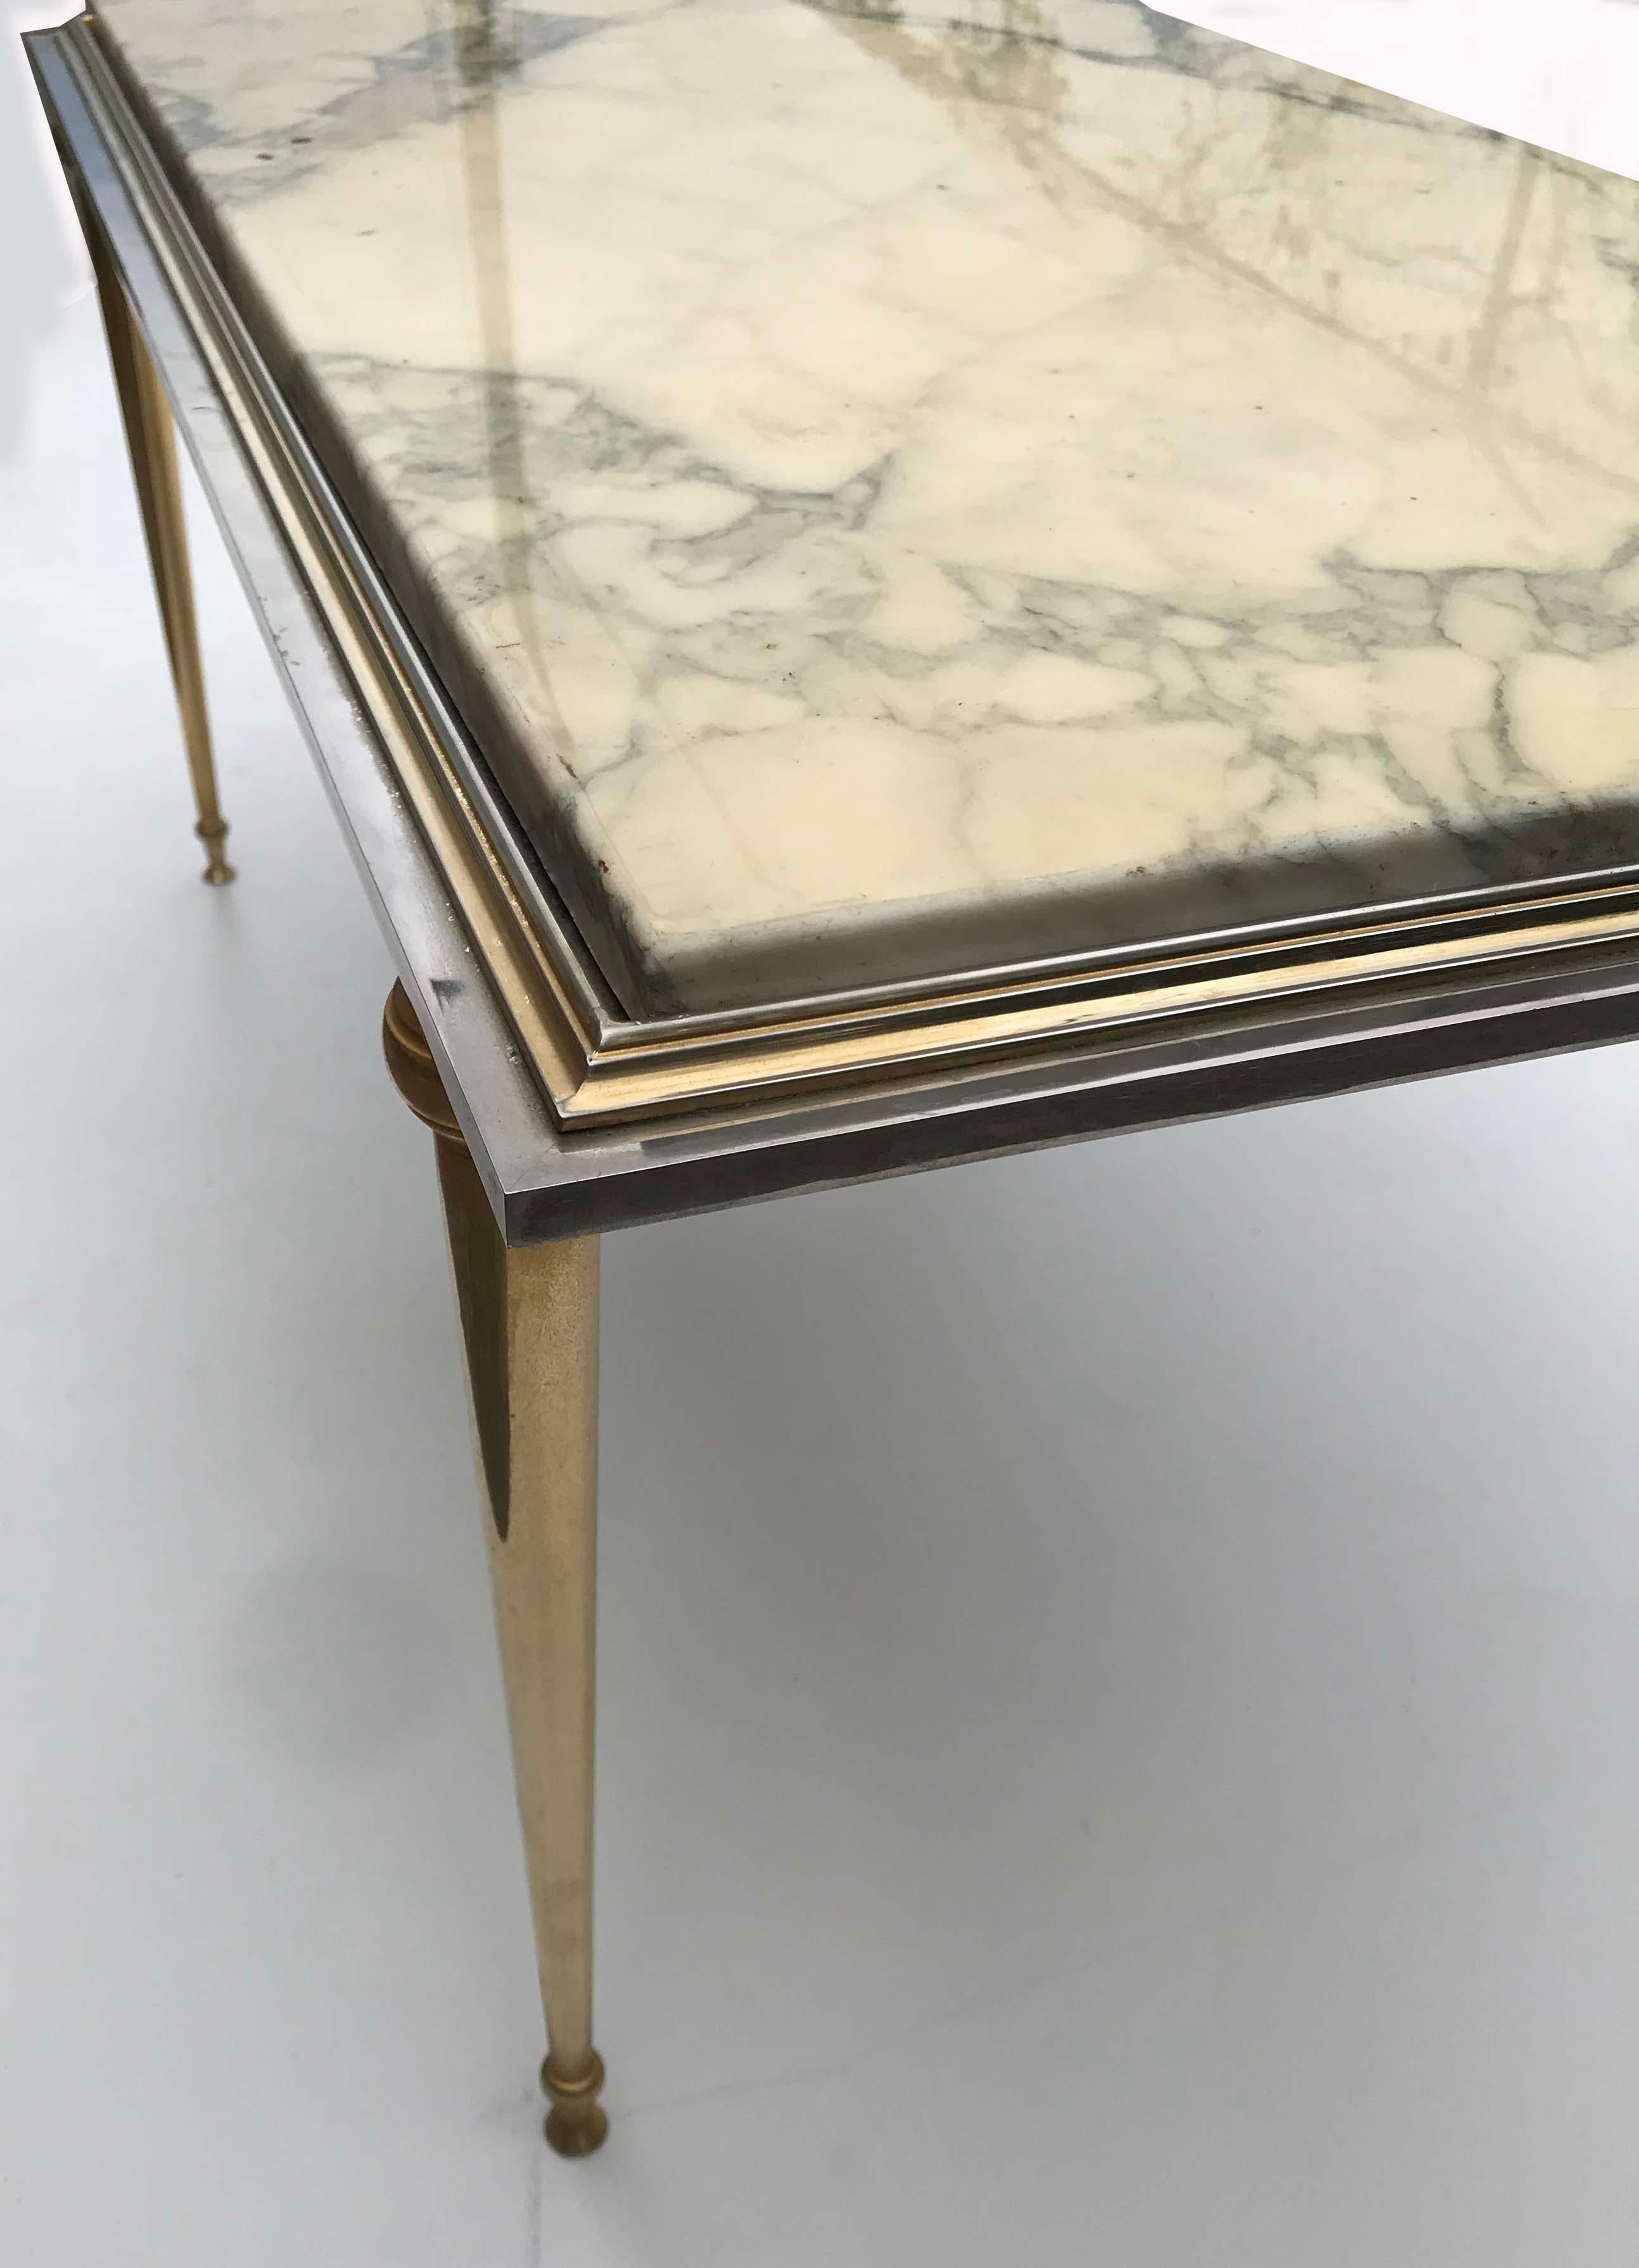 Prächtiger Maison Jansen Couchtisch mit zwei Patinas:: Bronze und Stahl doriert. Die Platte ist aus italienischem Carrara-Marmor::
schwer und robust. 
Sehr guter Originalzustand.